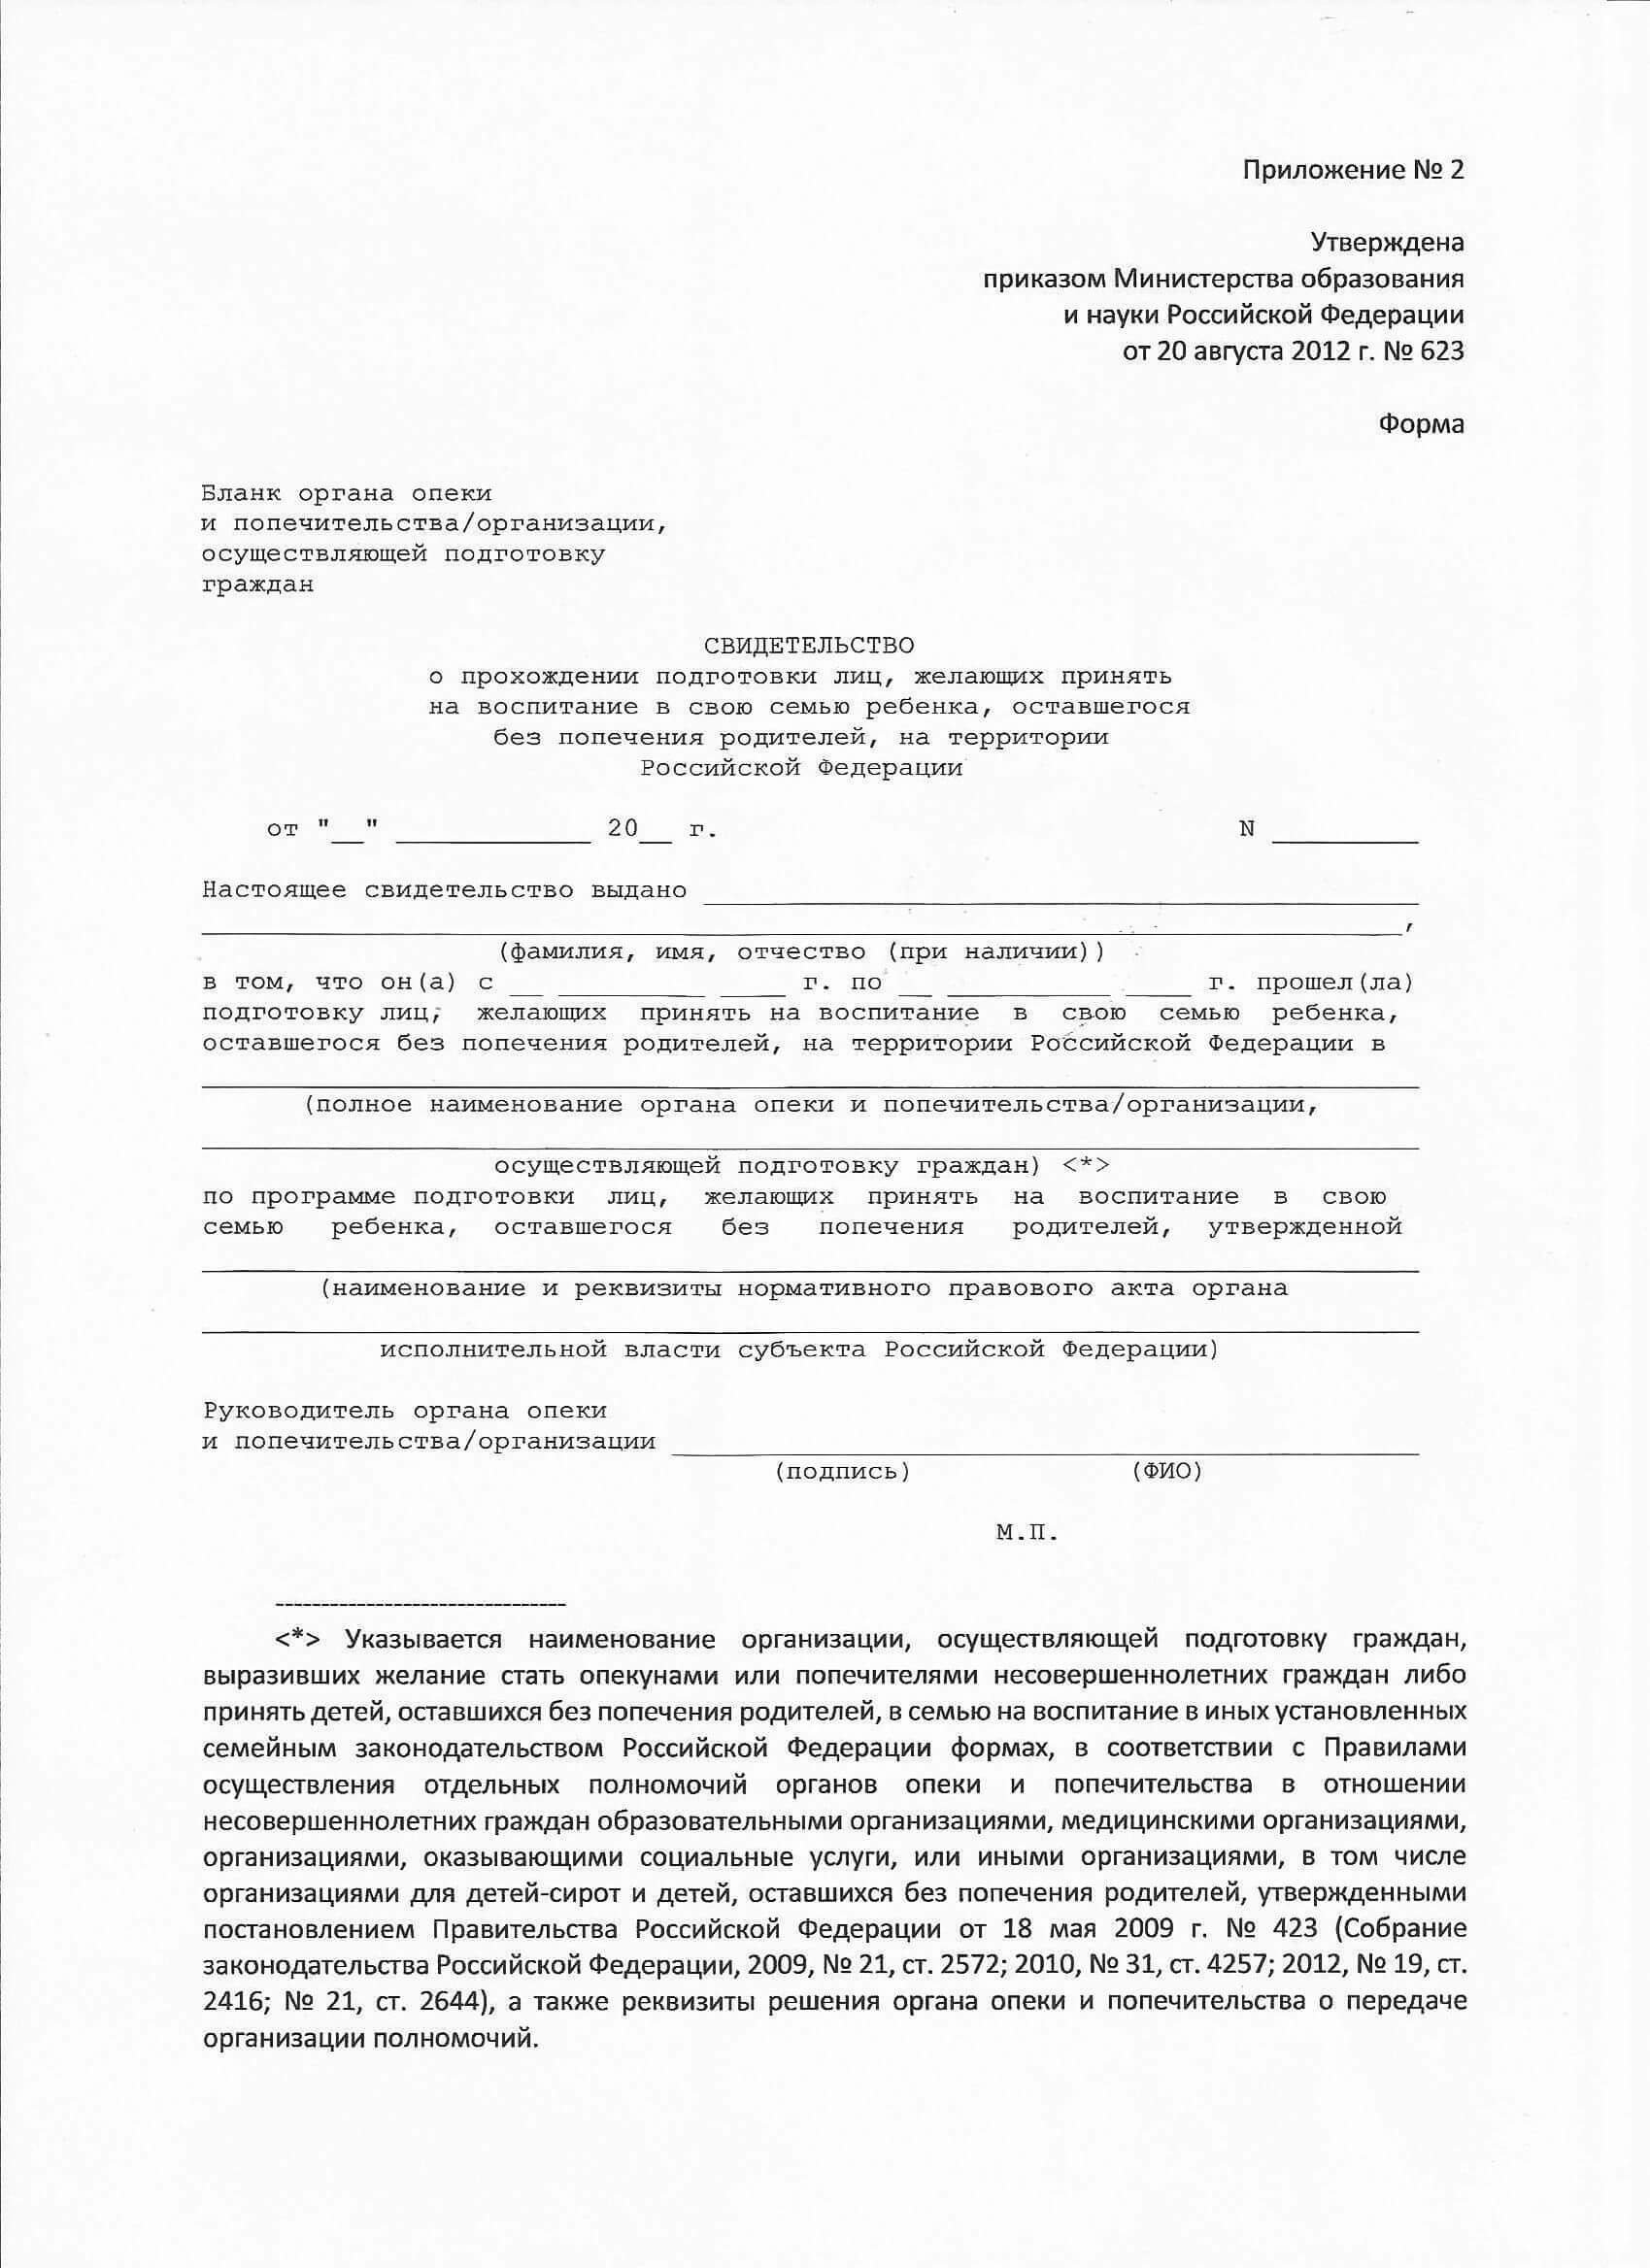 Купить сертификат школы приемных родителей в Москве